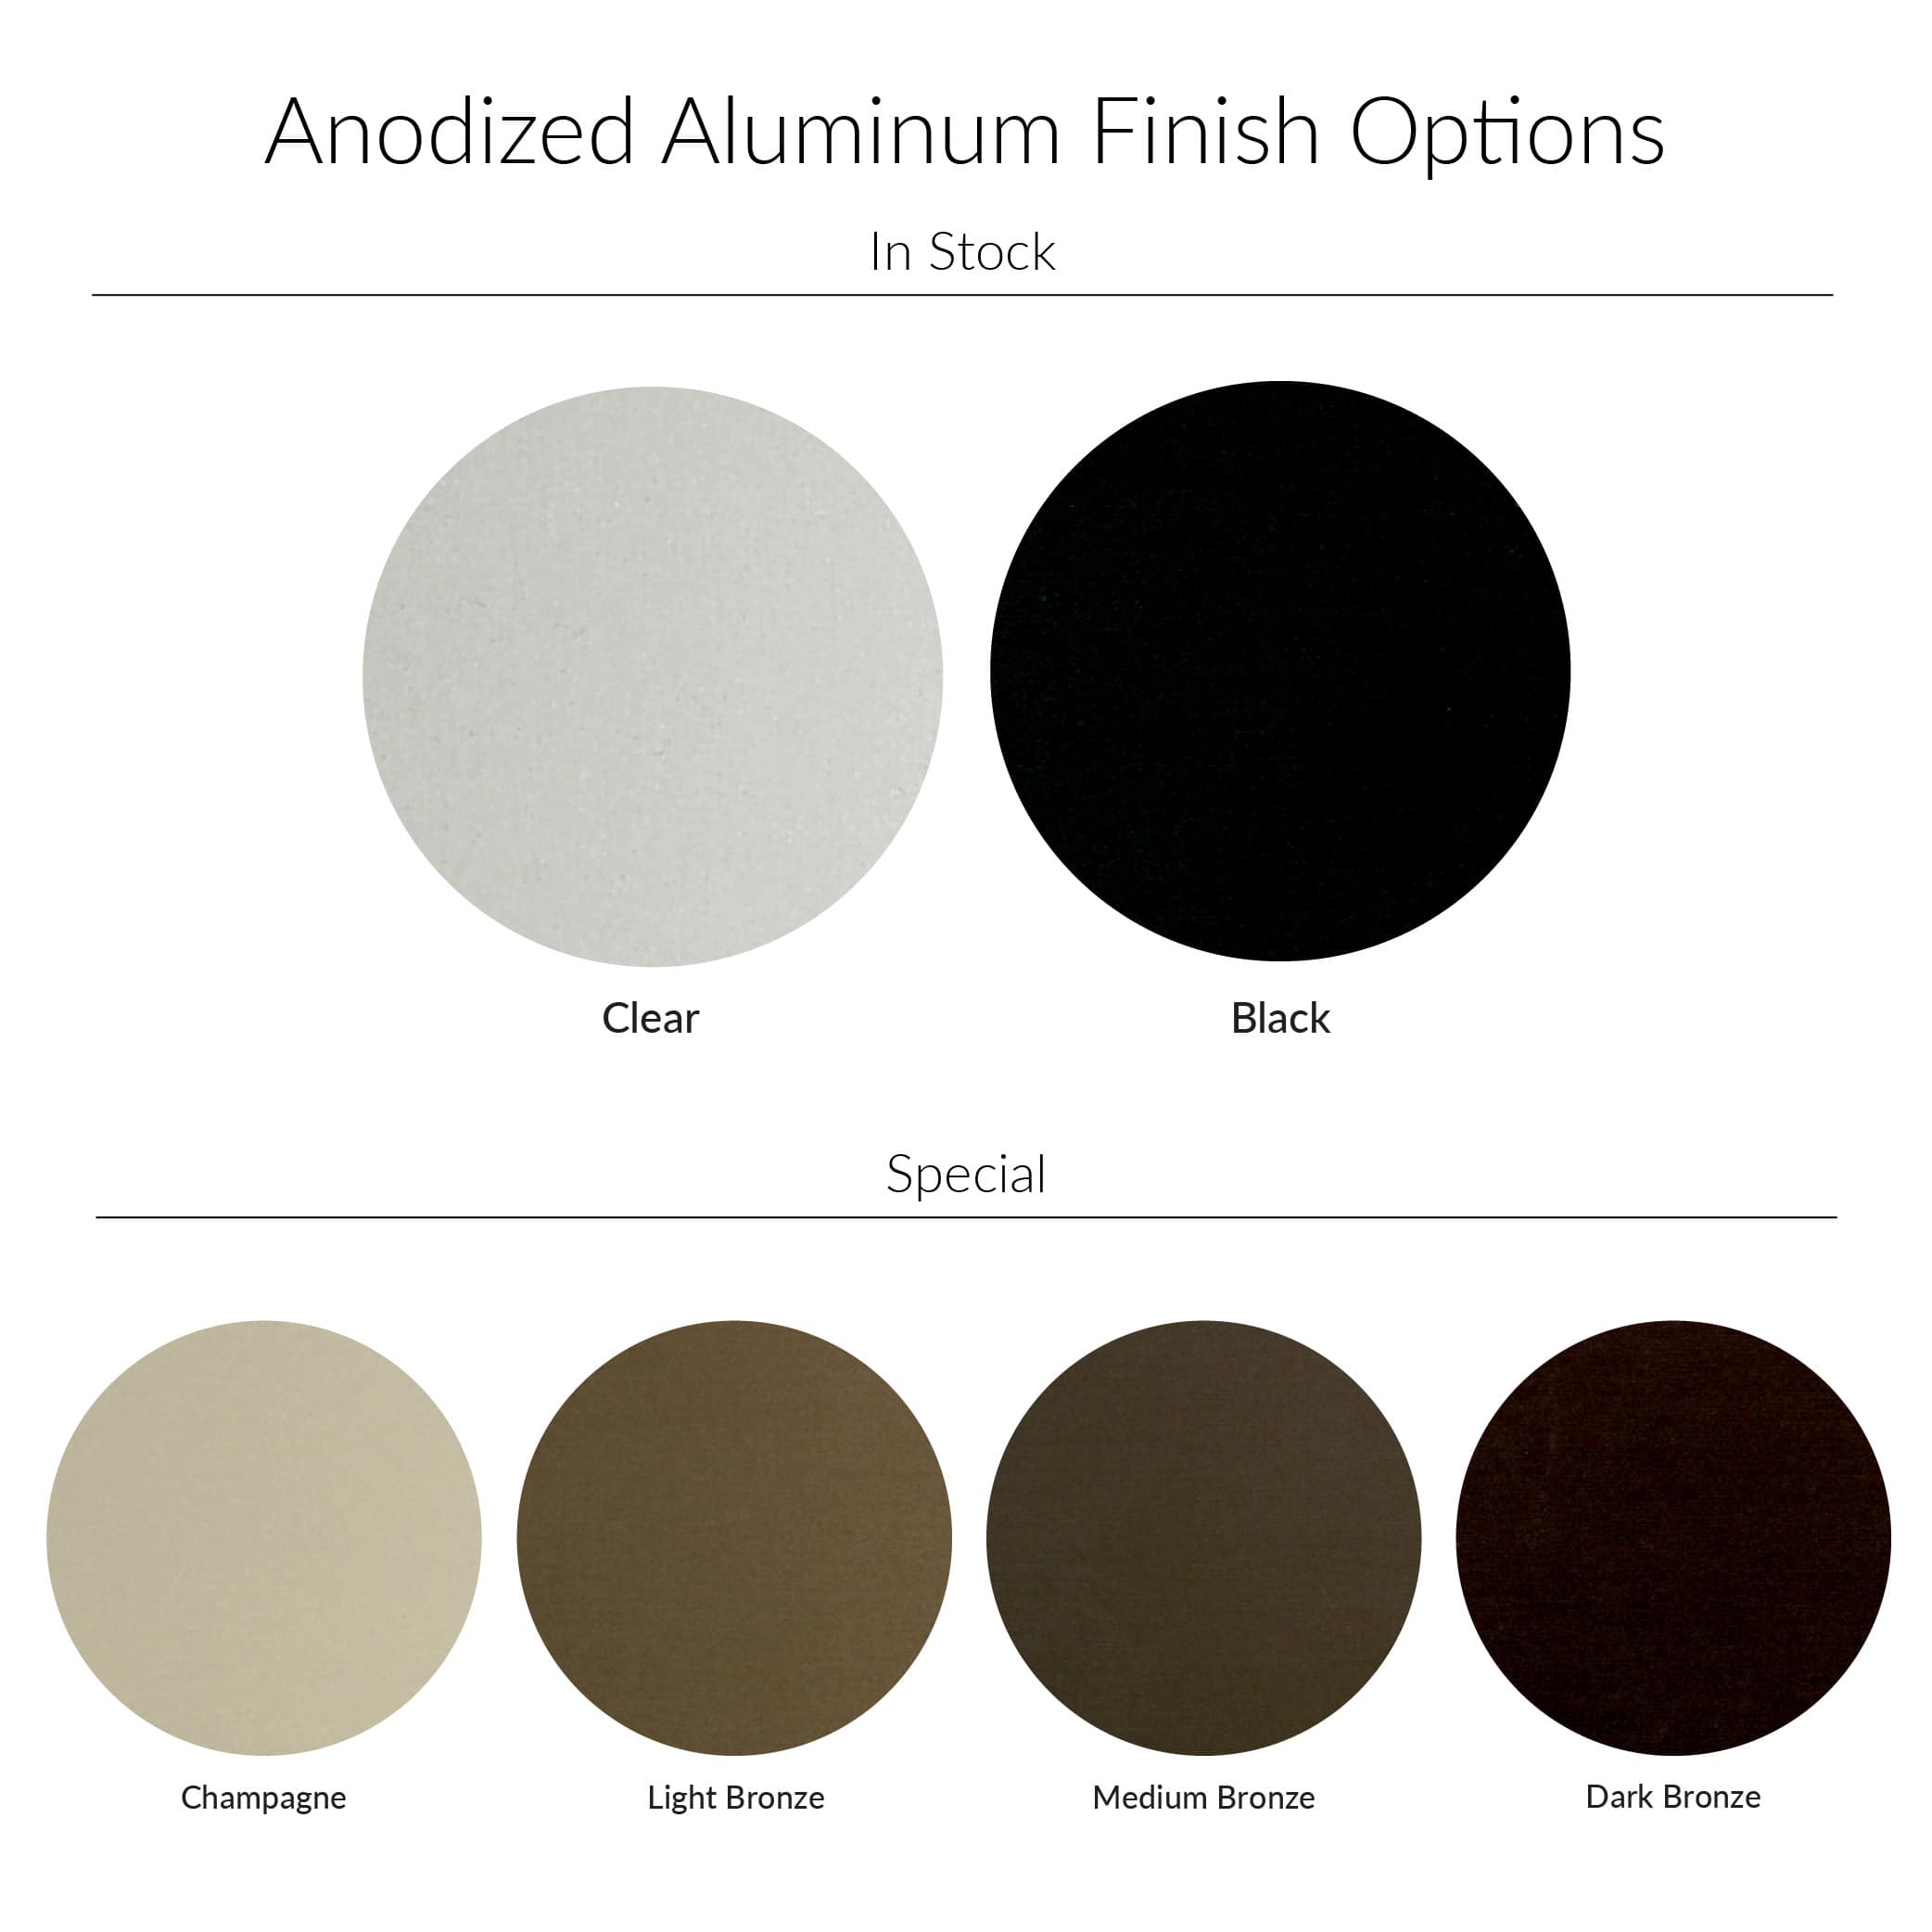 Anodized aluminum finish options.